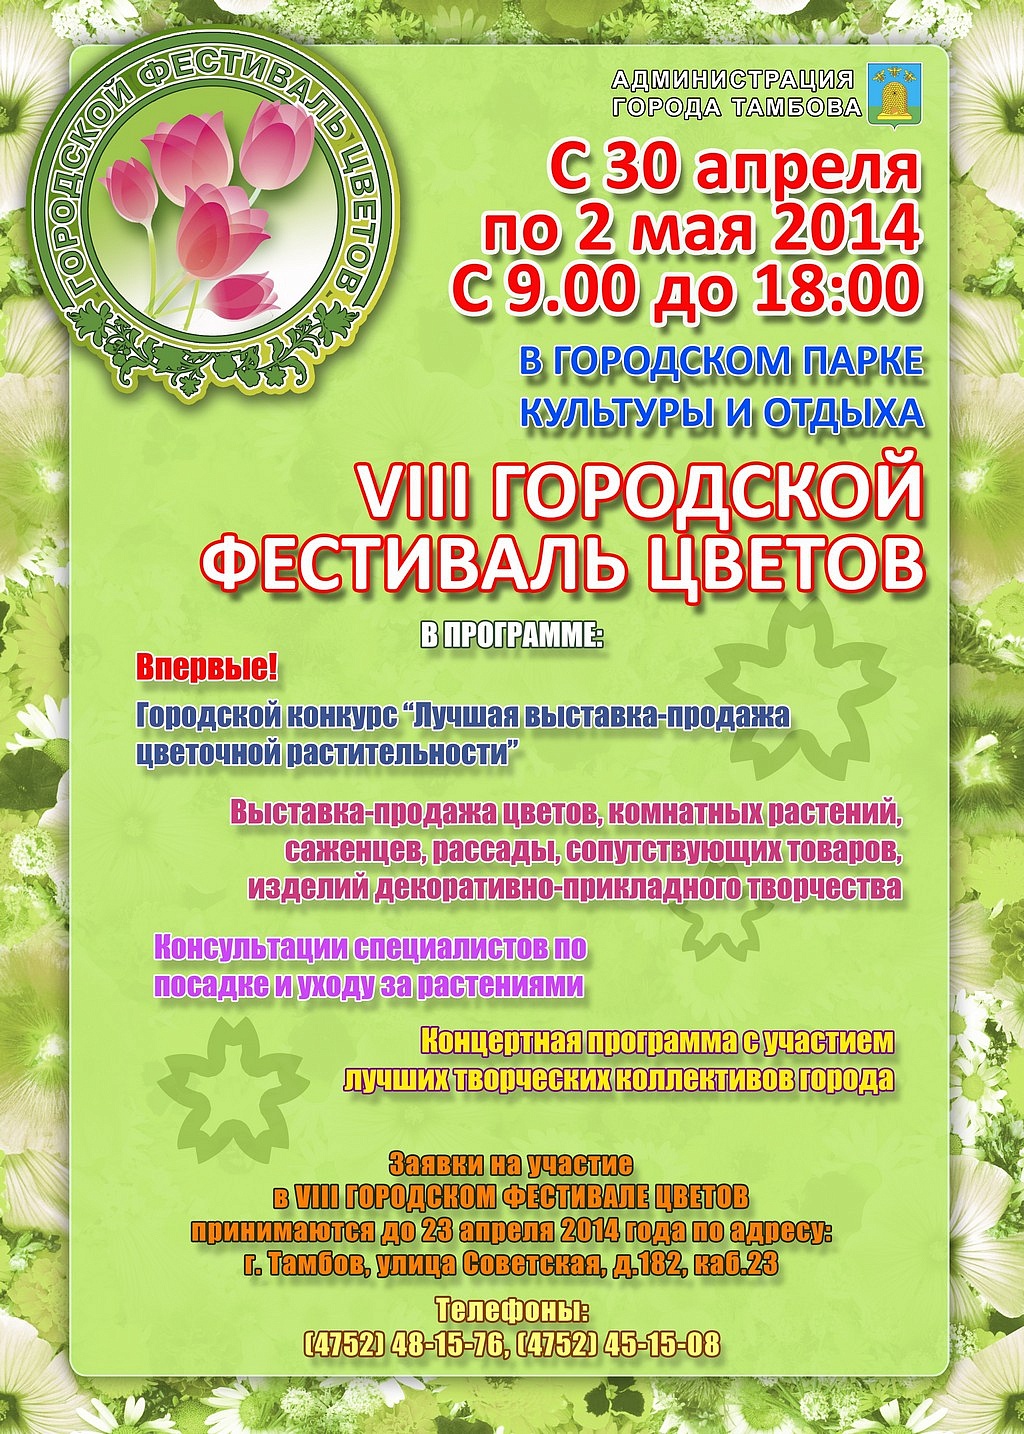 VIII городской Фестиваль цветов